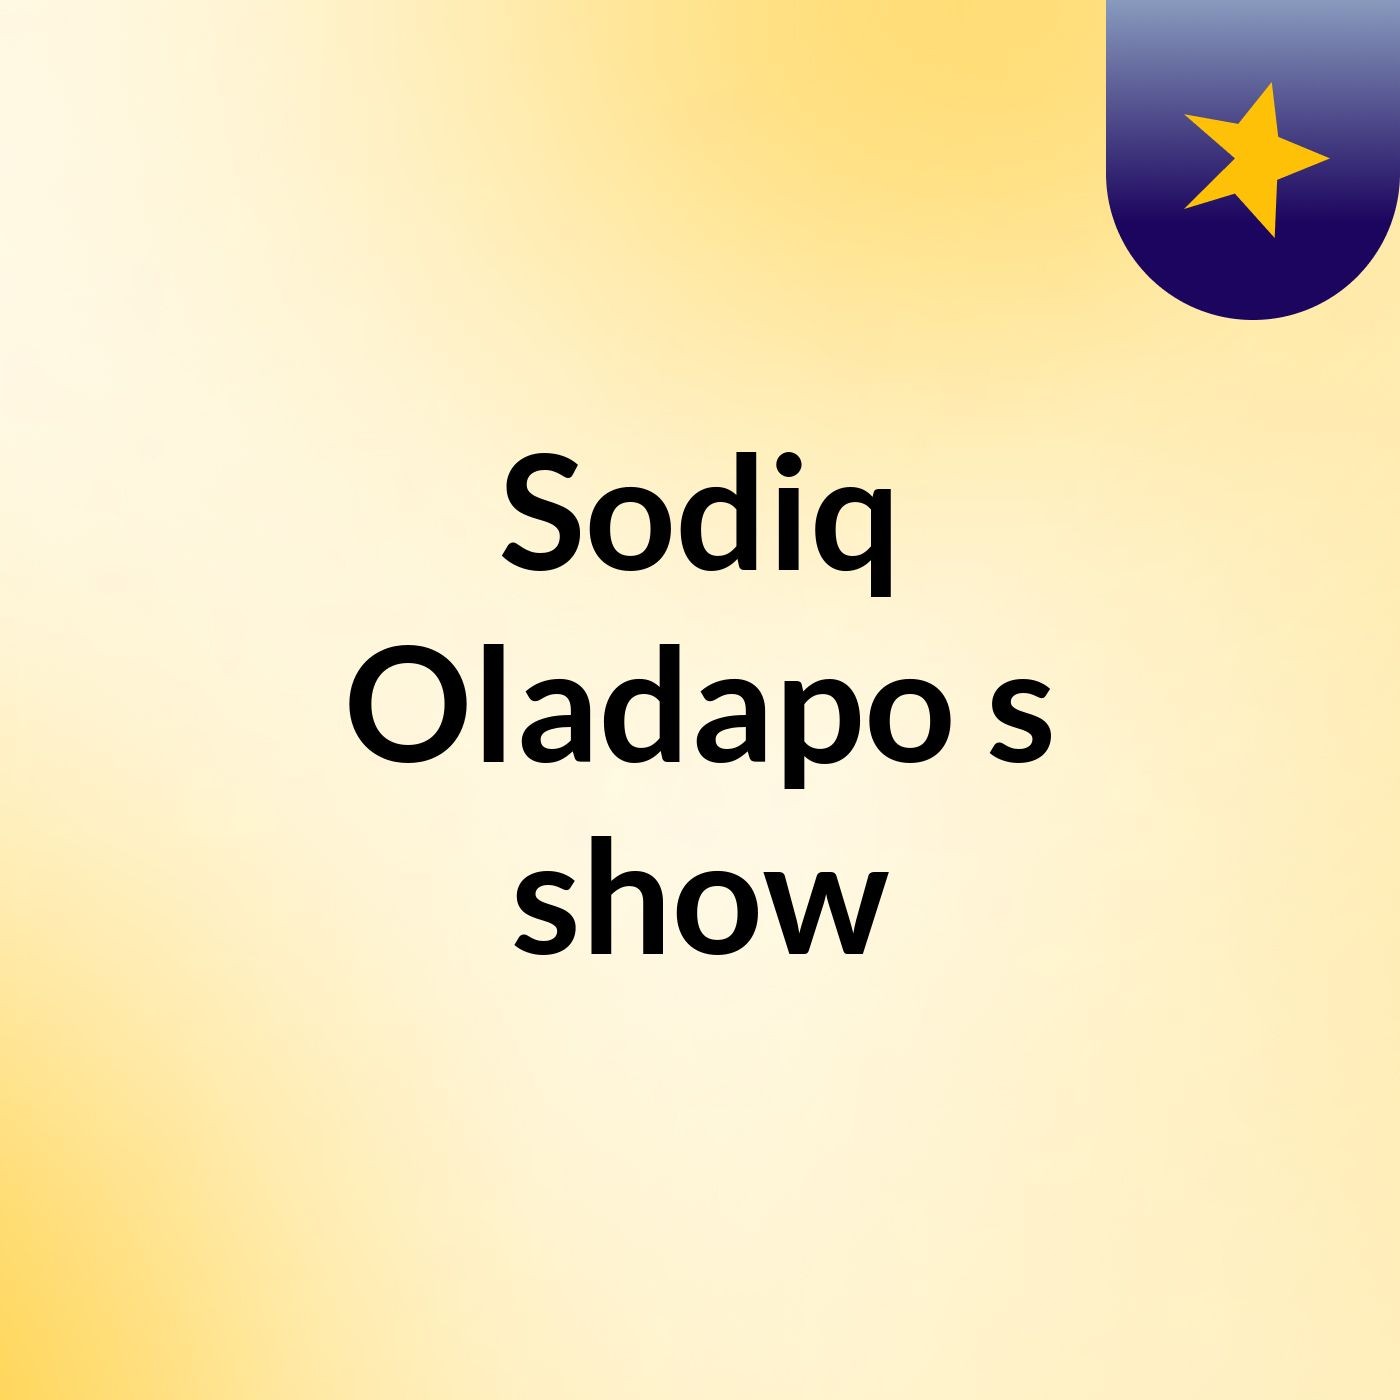 Episode 2 - Sodiq Oladapo's show